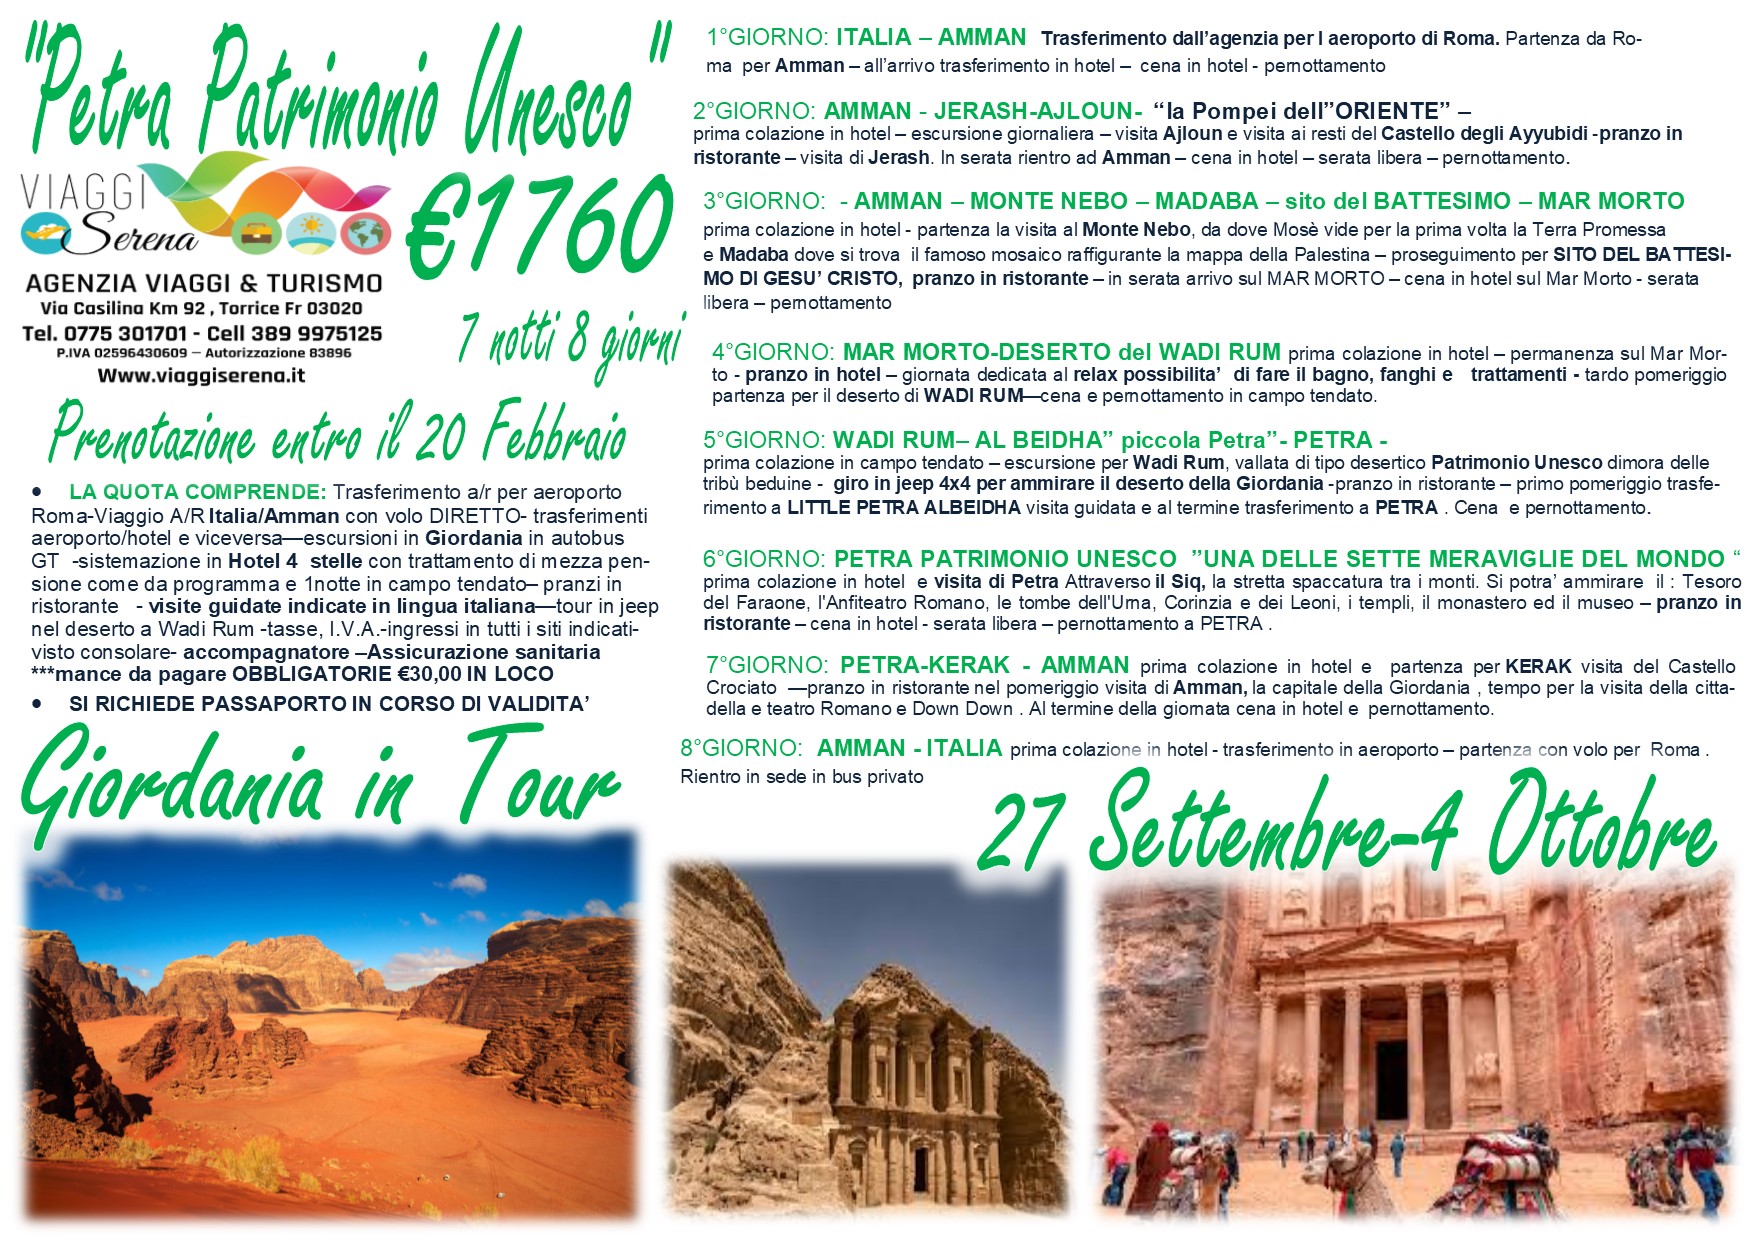 Viaggi di Gruppo: Gran Tour Giordania “Speciale Petra” 27 Settembre- 4 Ottobre  € 1760,00